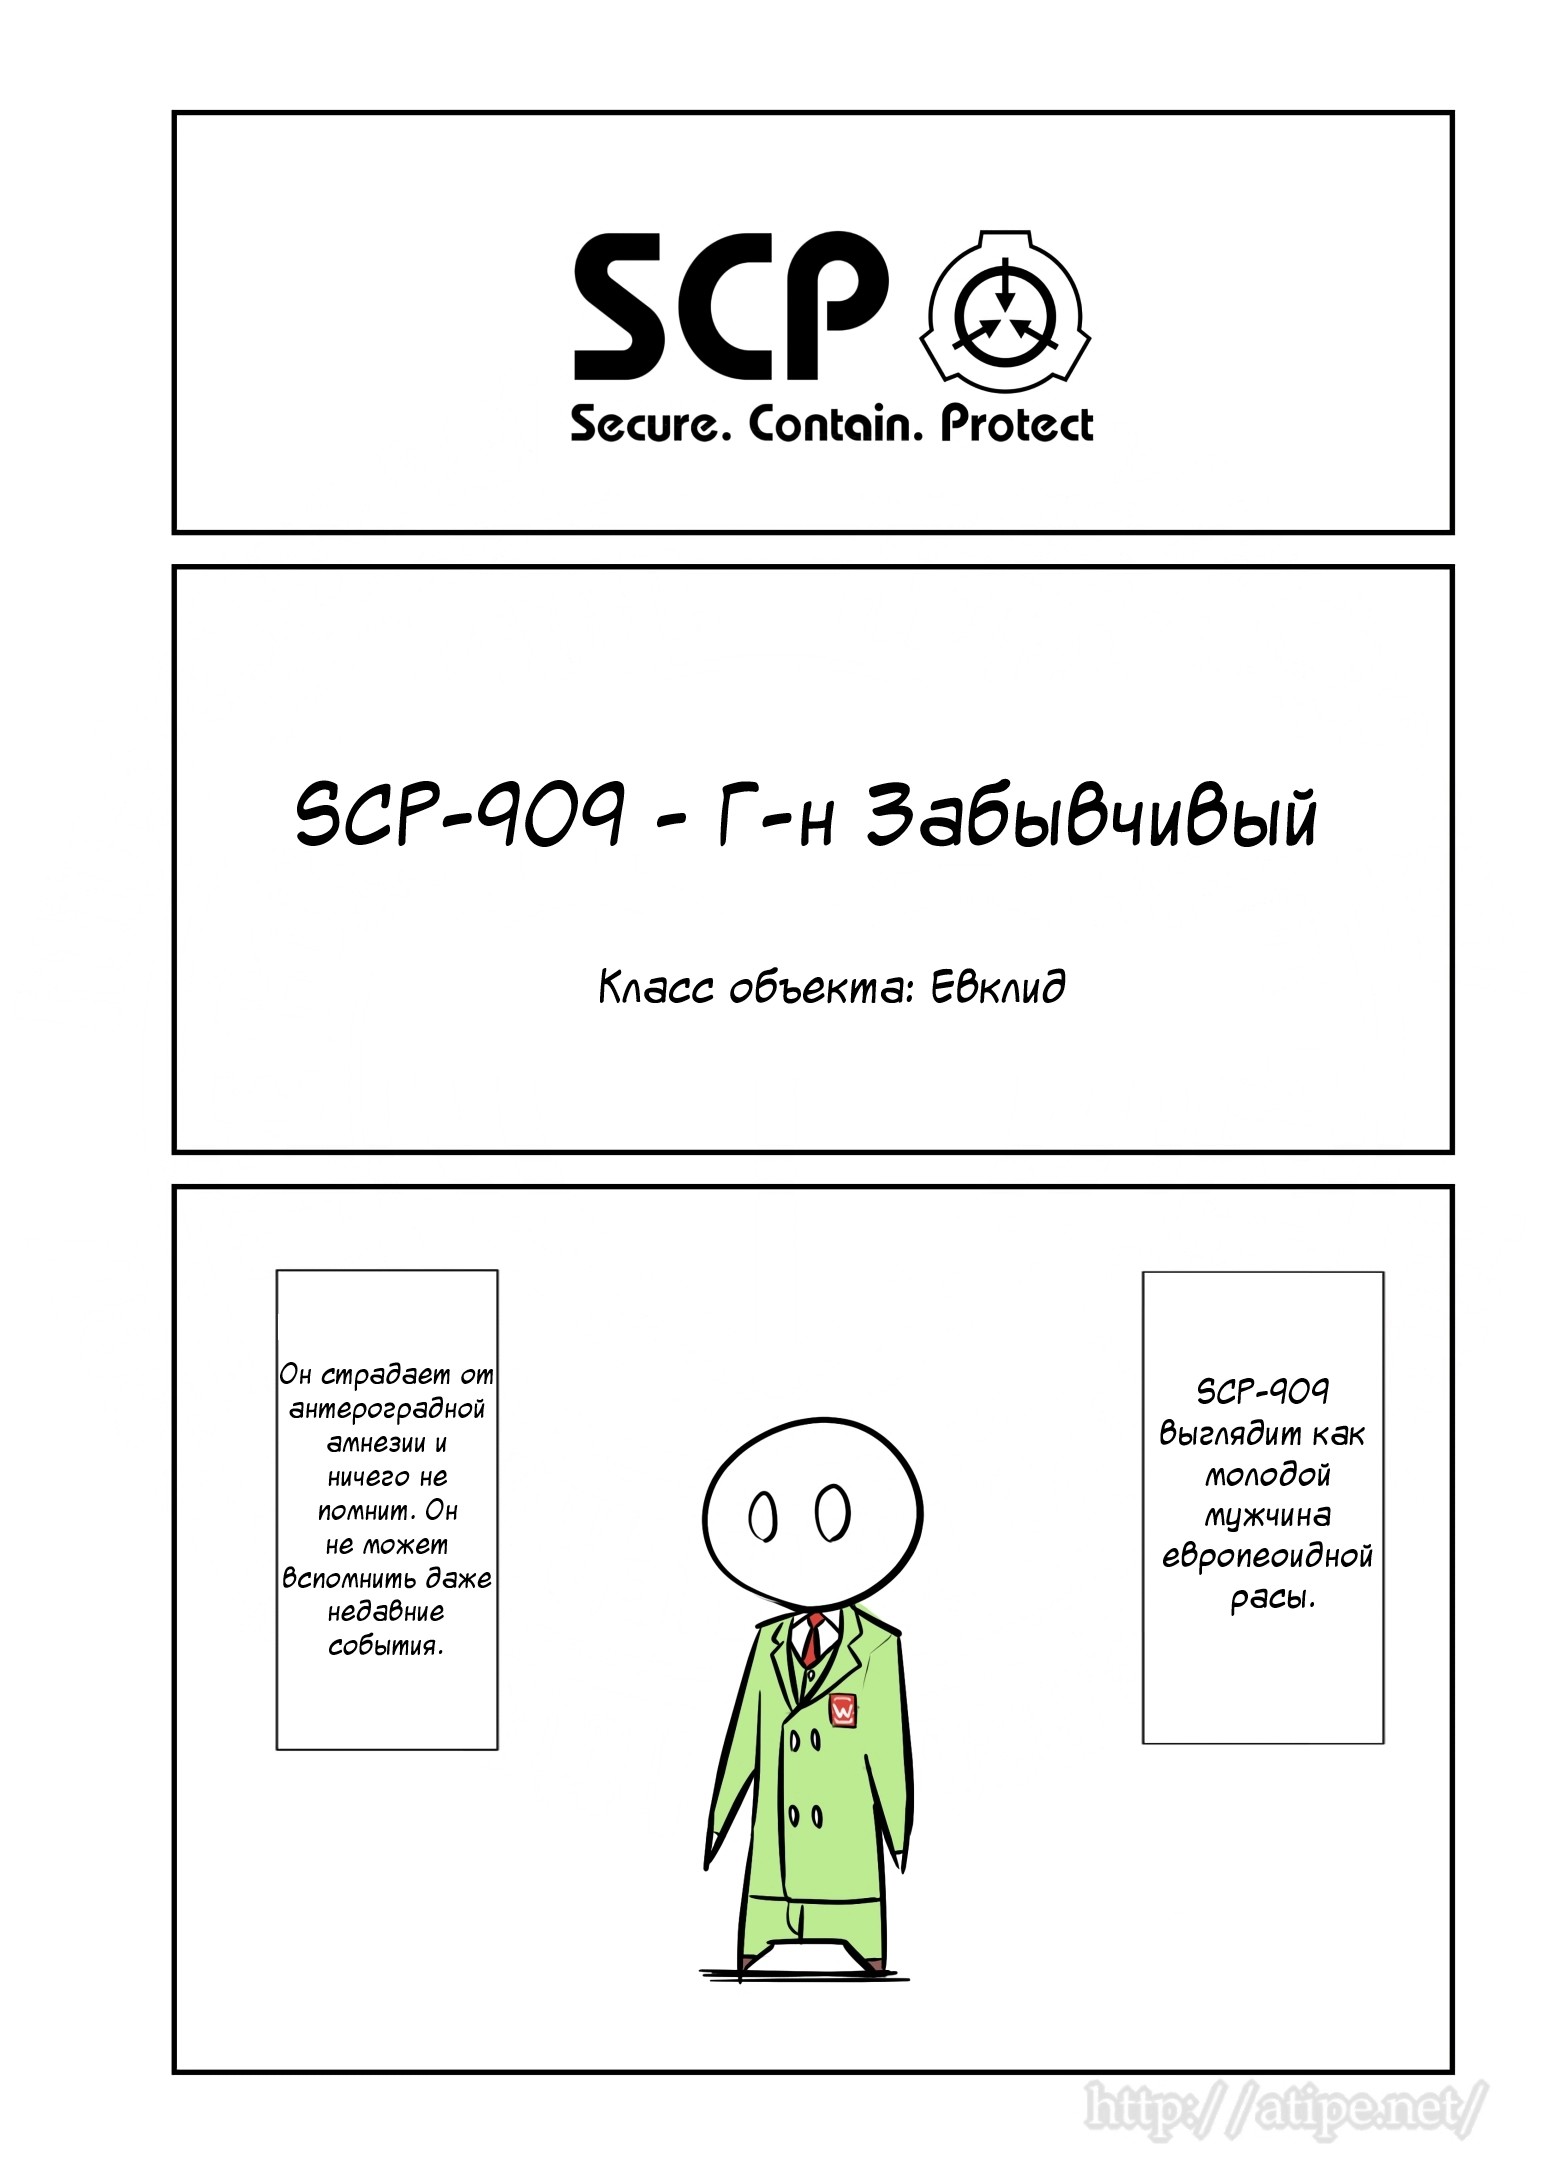 Упрощенный SCP 1 - 58 SCP-909